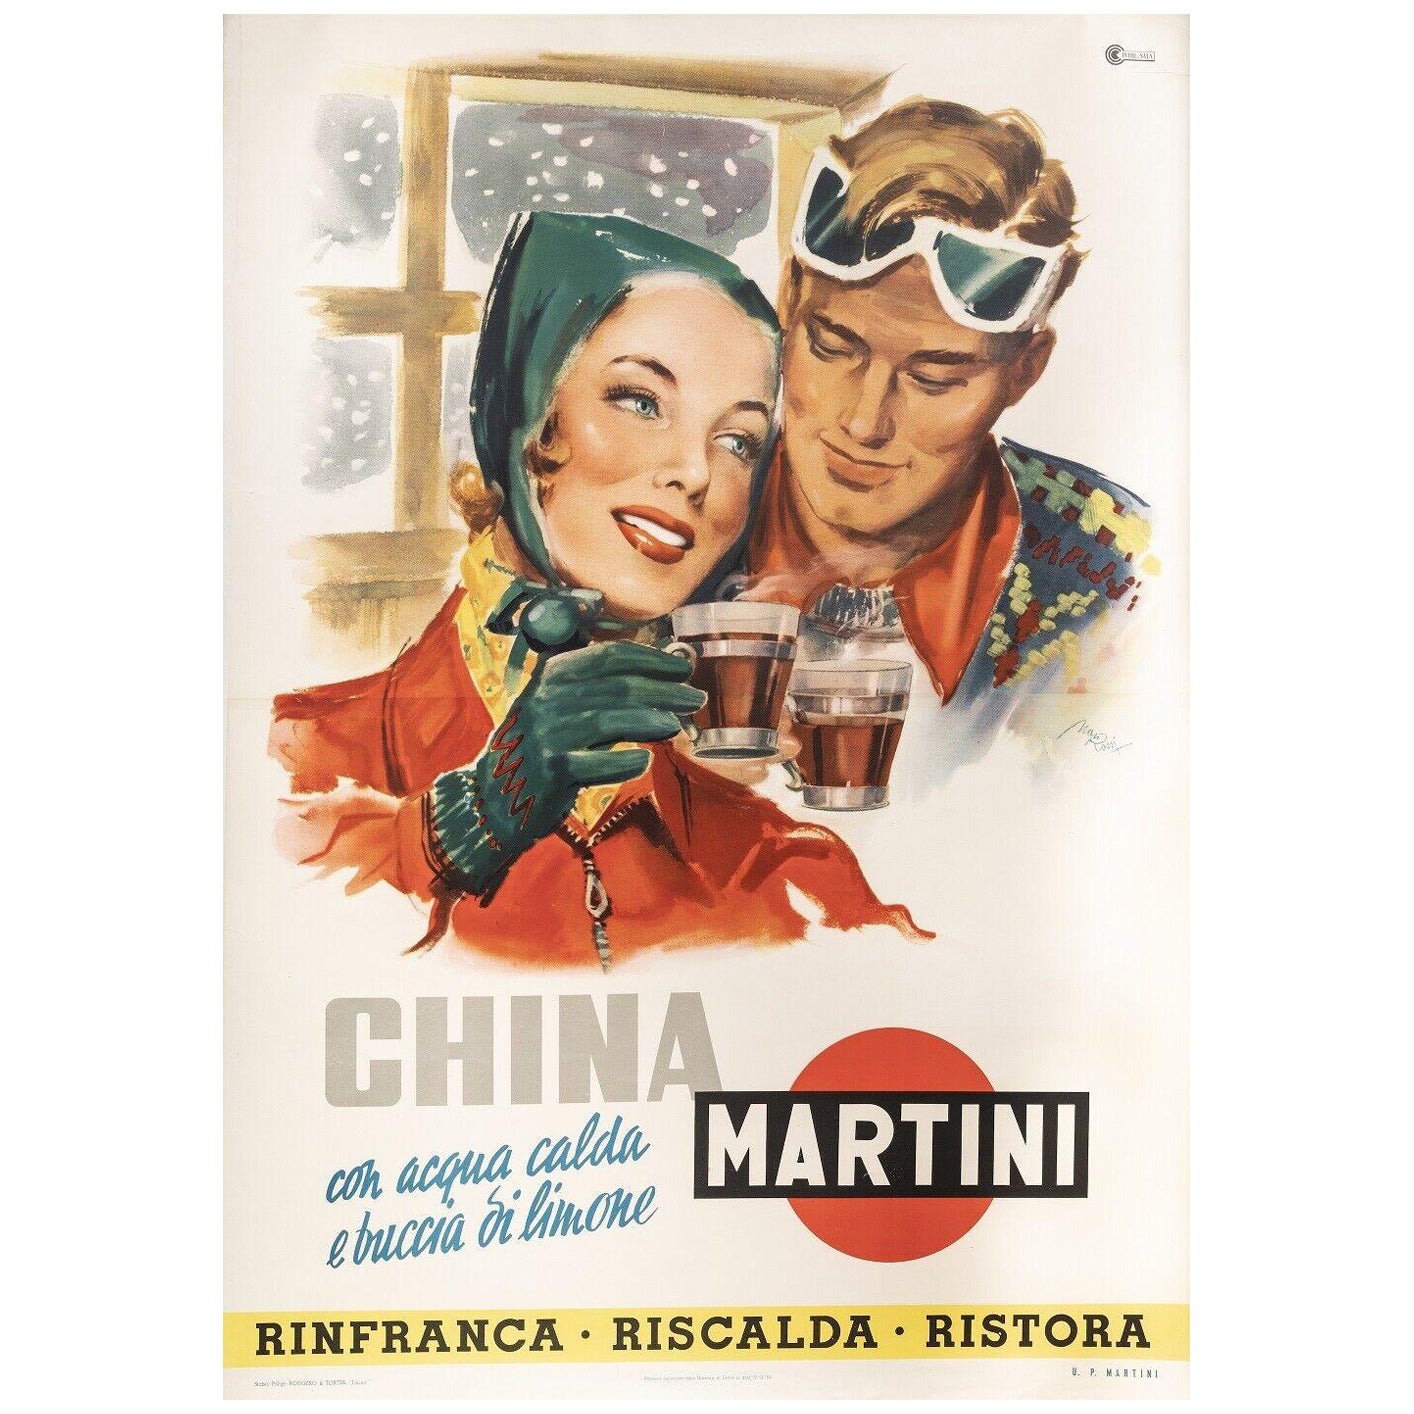 Original Italian Vintage Poster-Rossi M.-China Martini-Quinquina-Ski, 1950